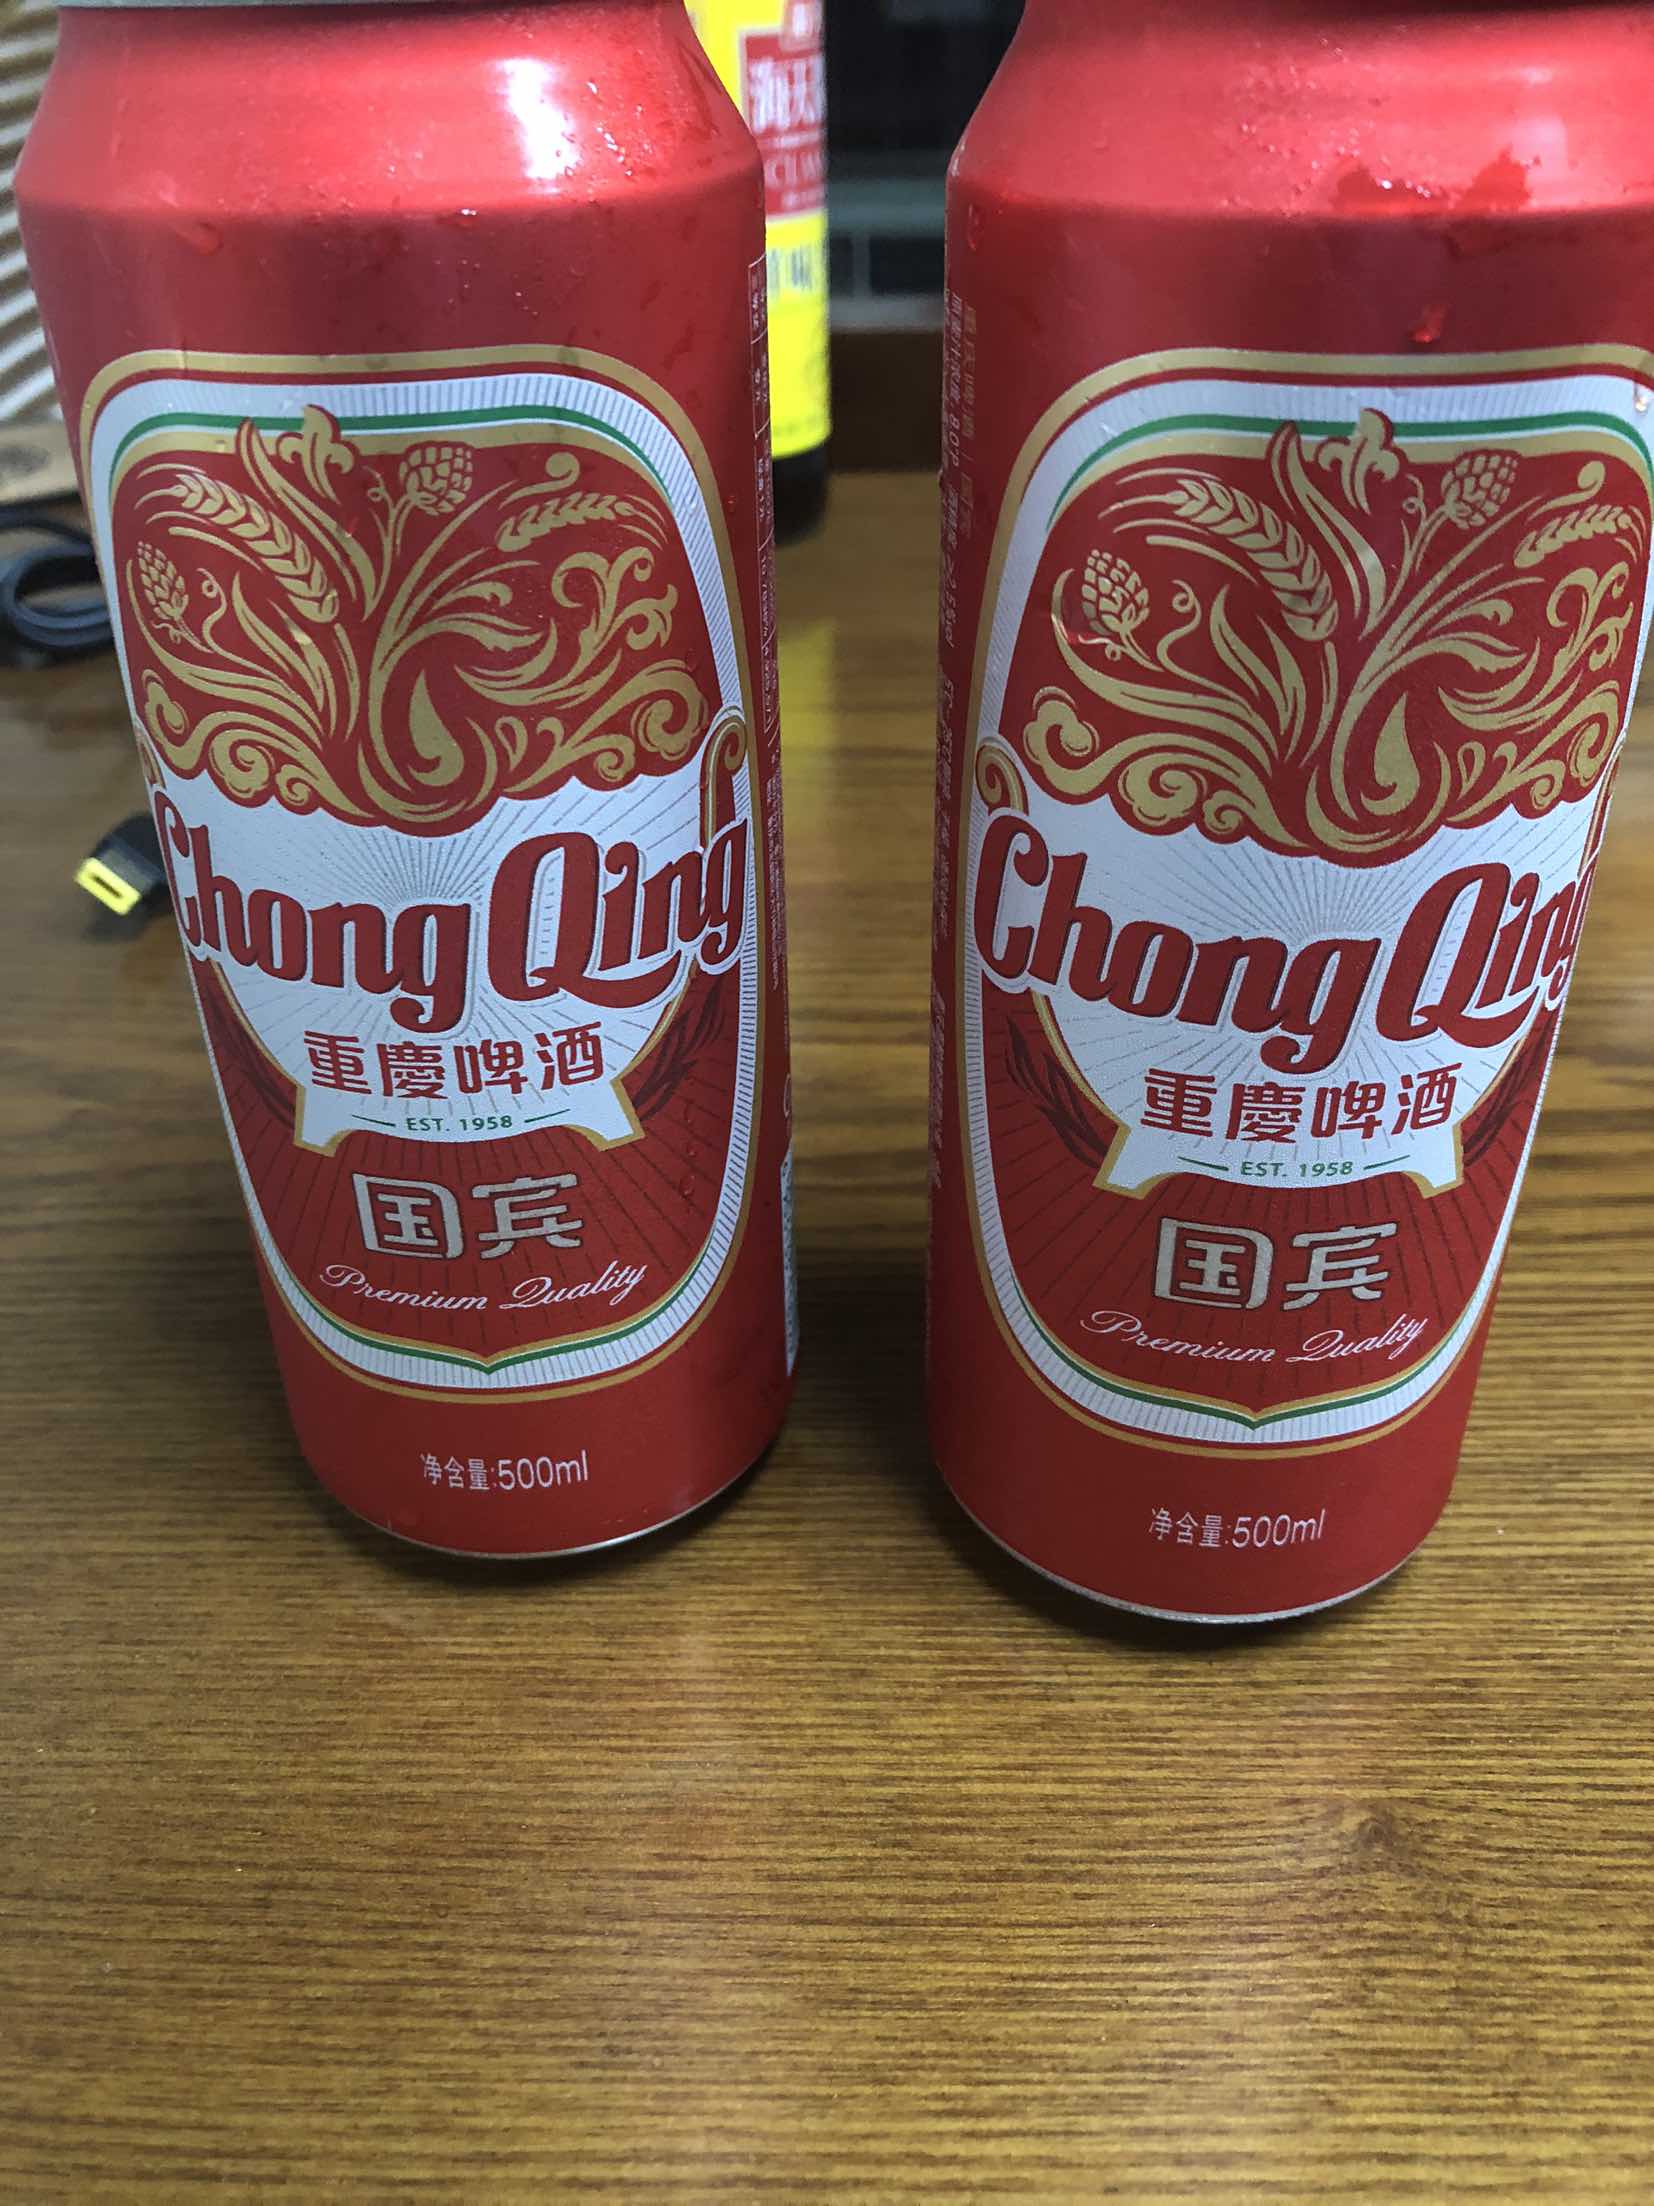 虽然我没买重庆啤酒的股票,但是买两罐重庆啤酒支持一下